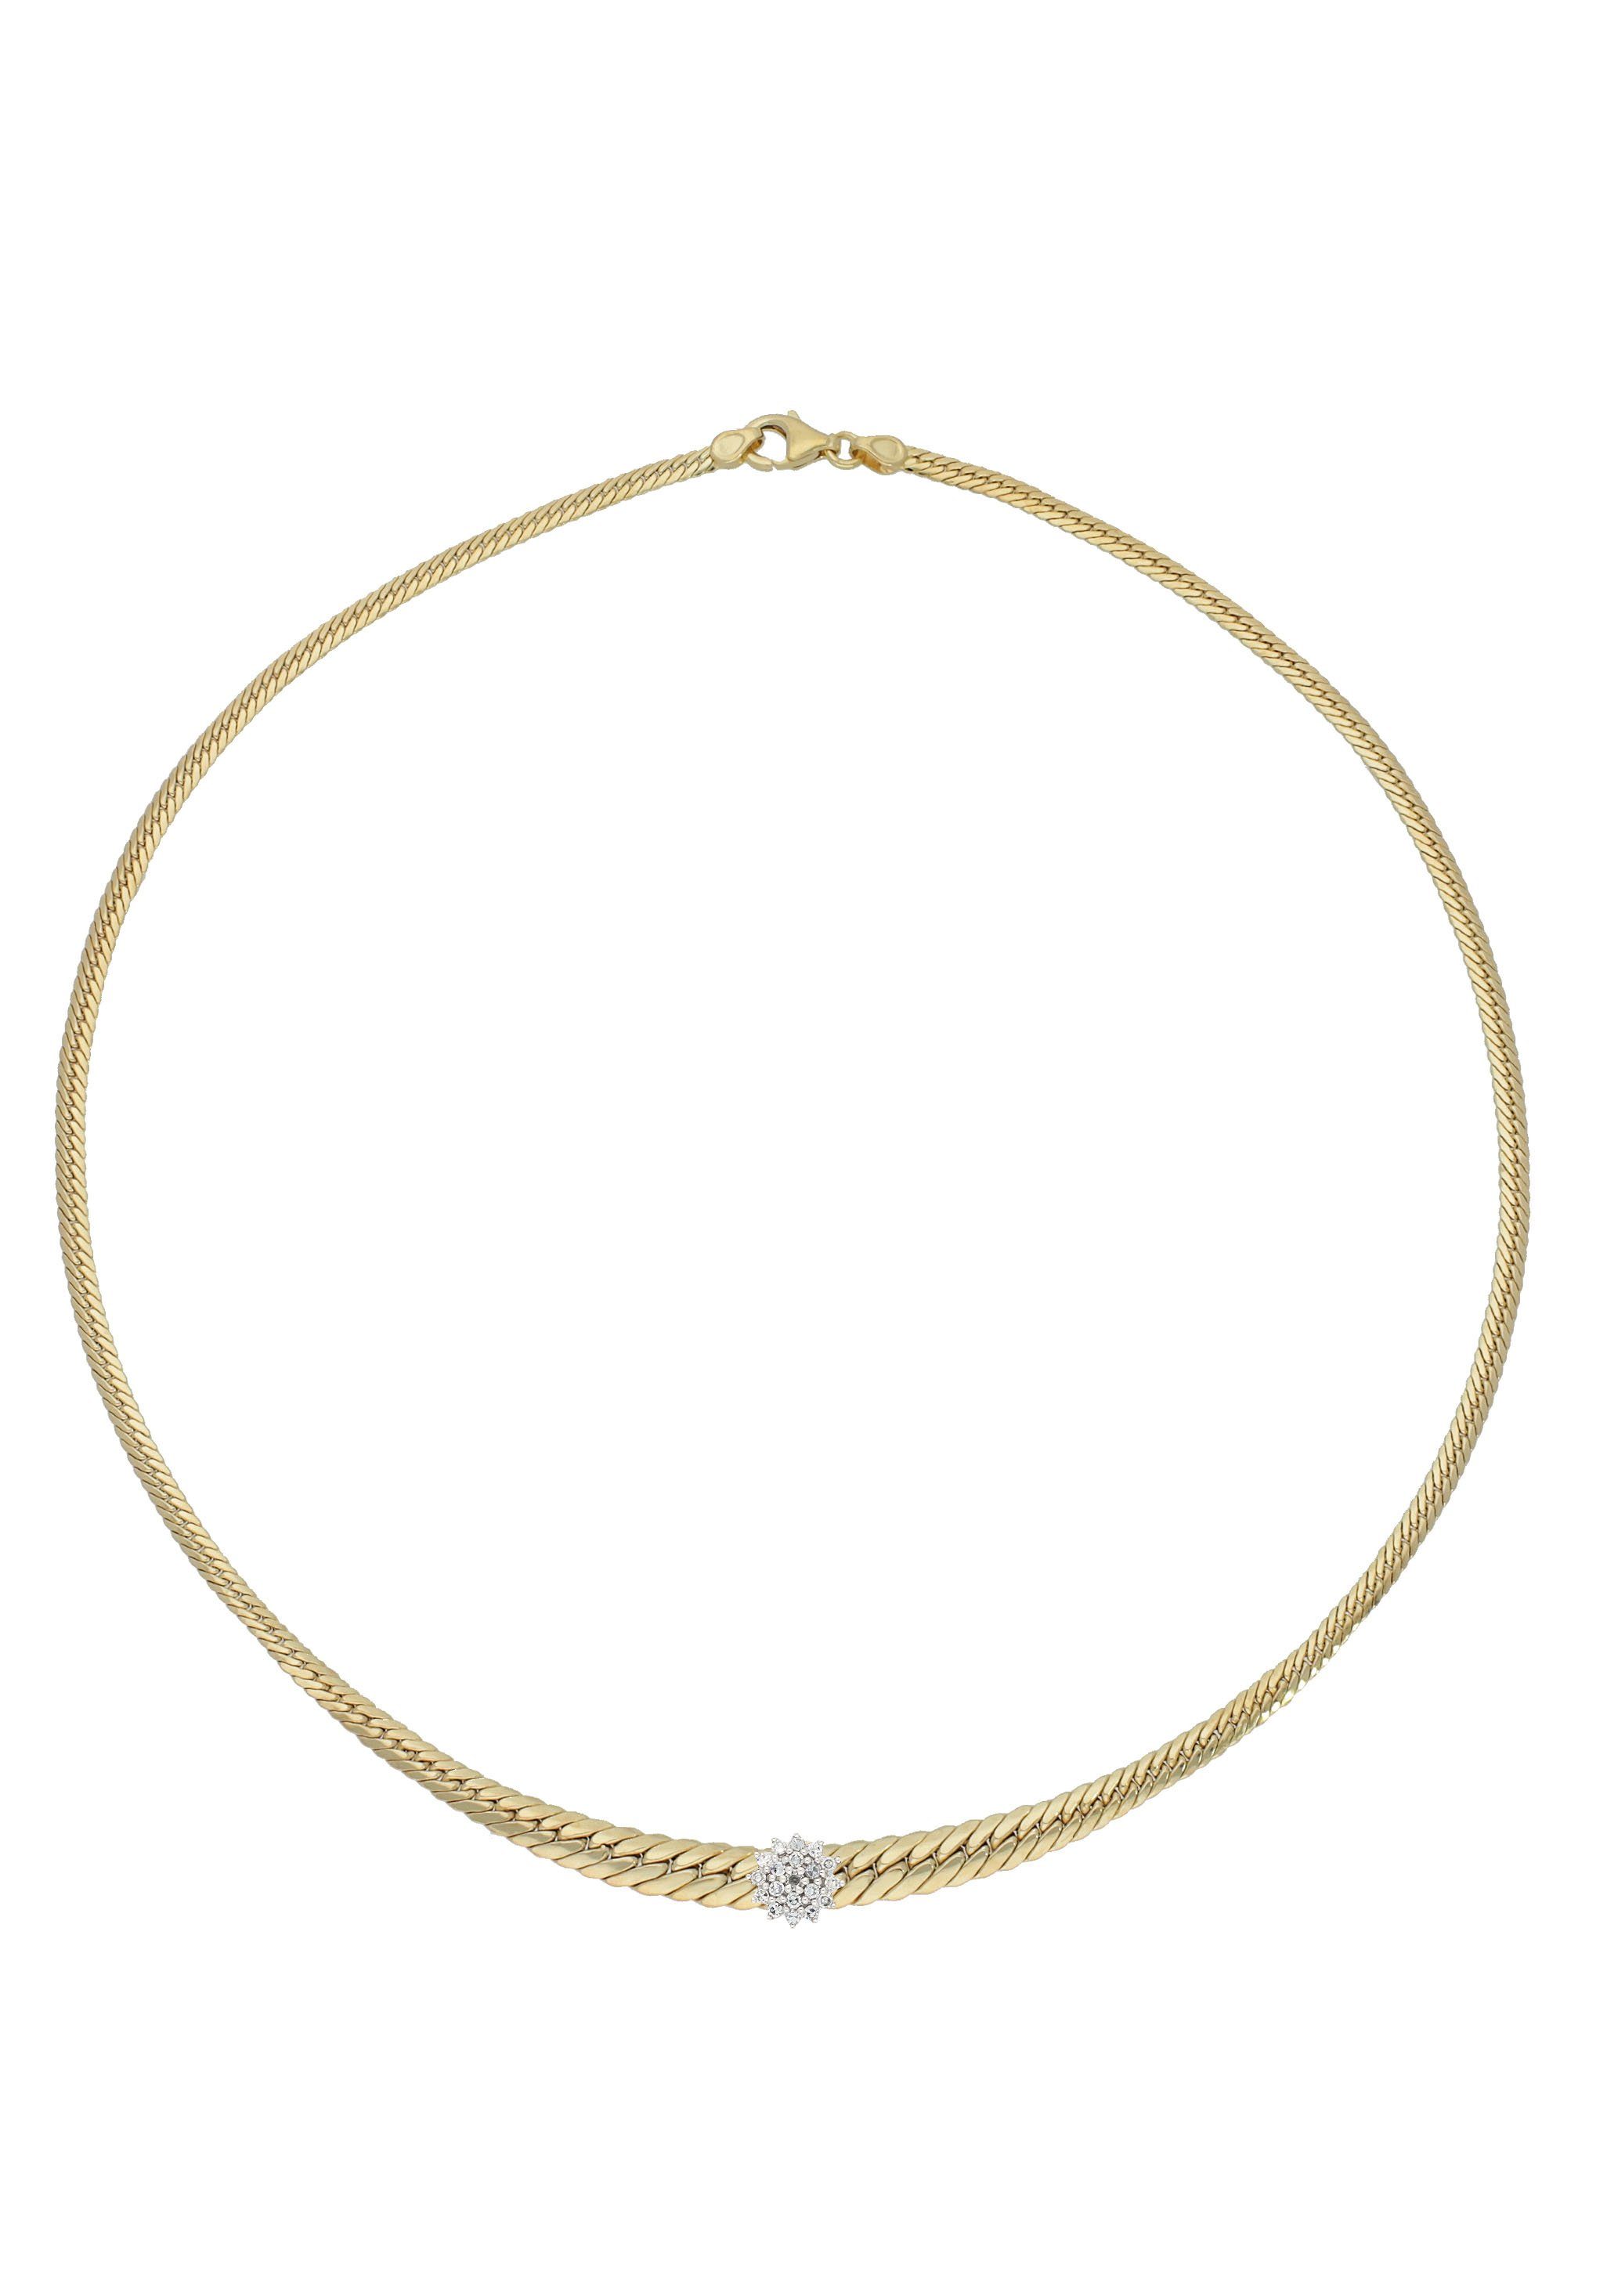 Firetti Collier Schmuck Geschenk Gold 585 Halsschmuck Halskette Goldkette Fantasie, mit Diamanten